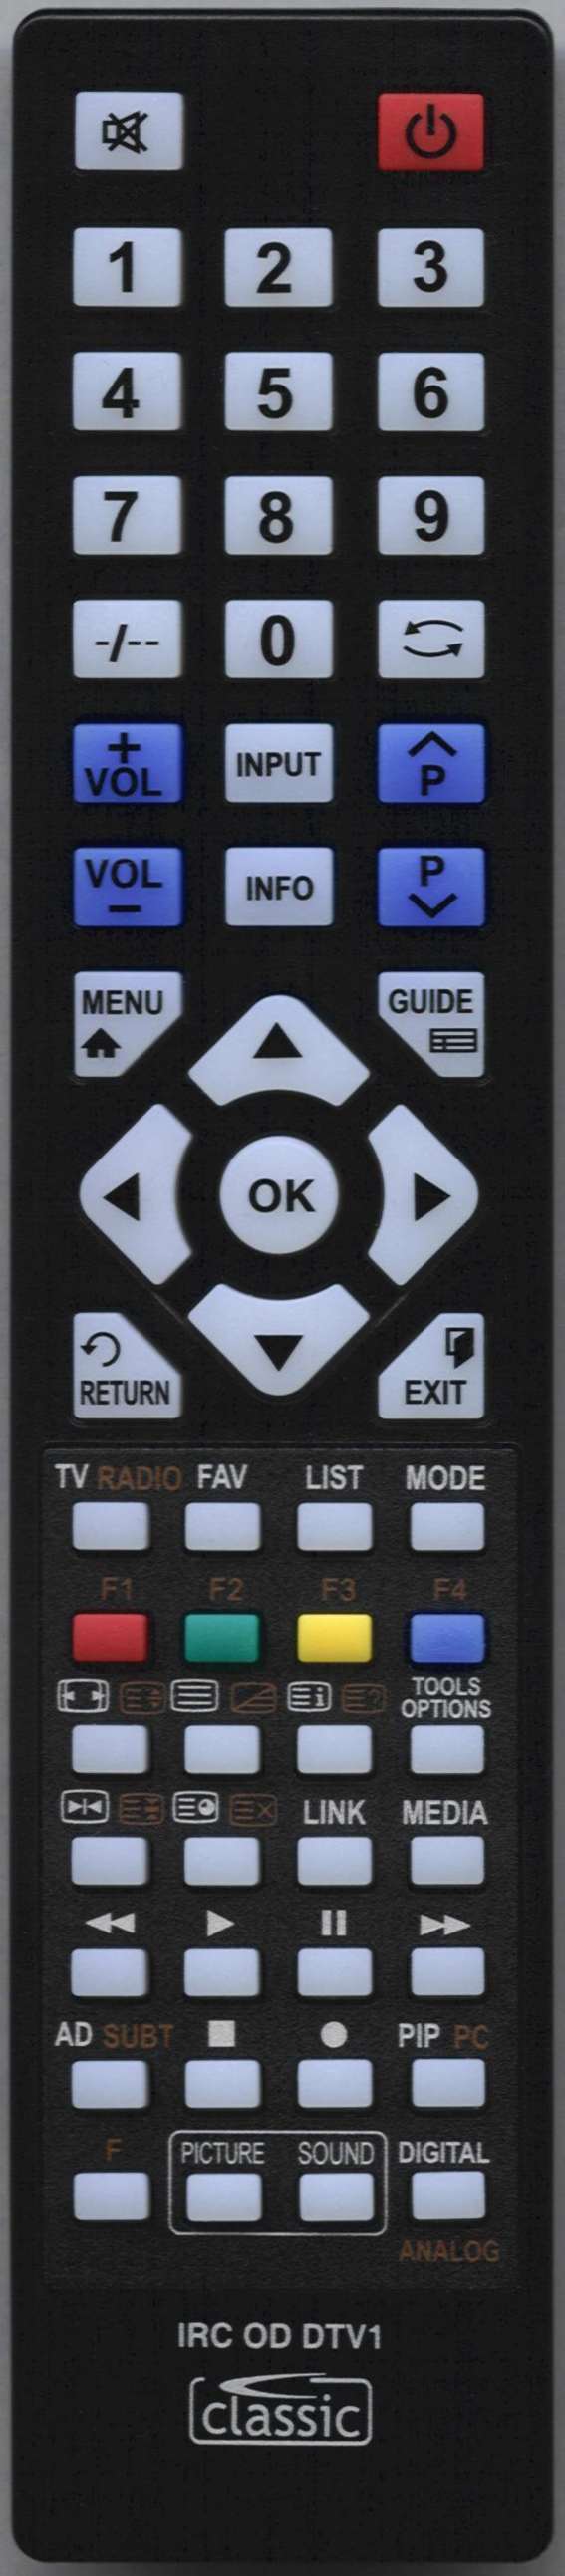 Funai LDD-A 2006 Remote Control